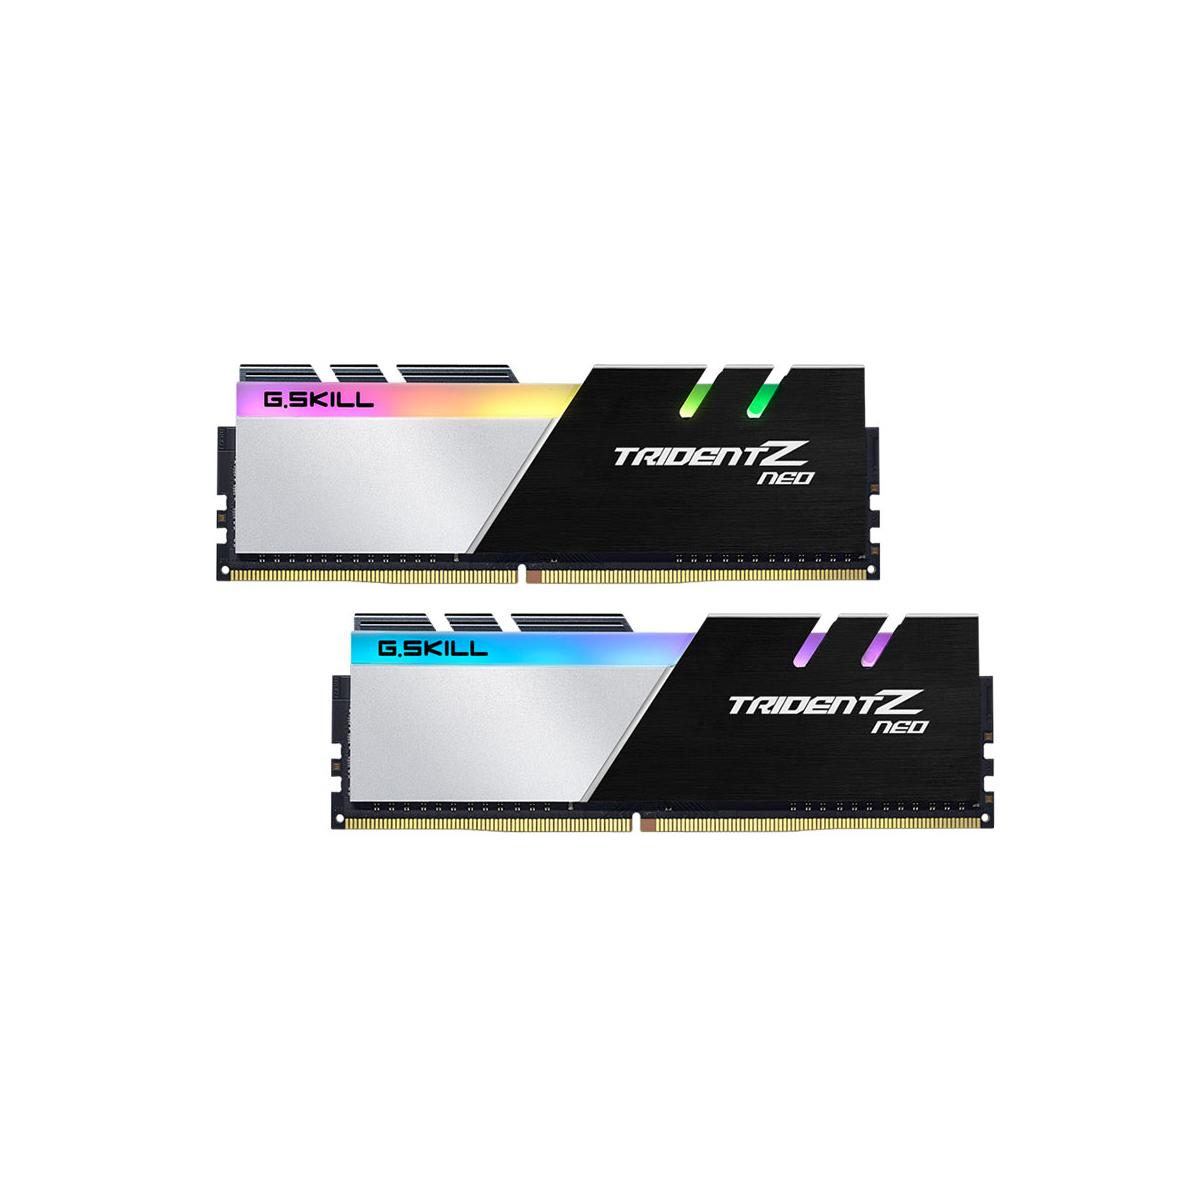 MEMORIA DIMM DDR4 G.SKILL (F4-3200C16D-16GTZN) 16GB (2X8GB) 3200MHZ, TRIDENT Z NEO - F4-3200C16D-16GTZN